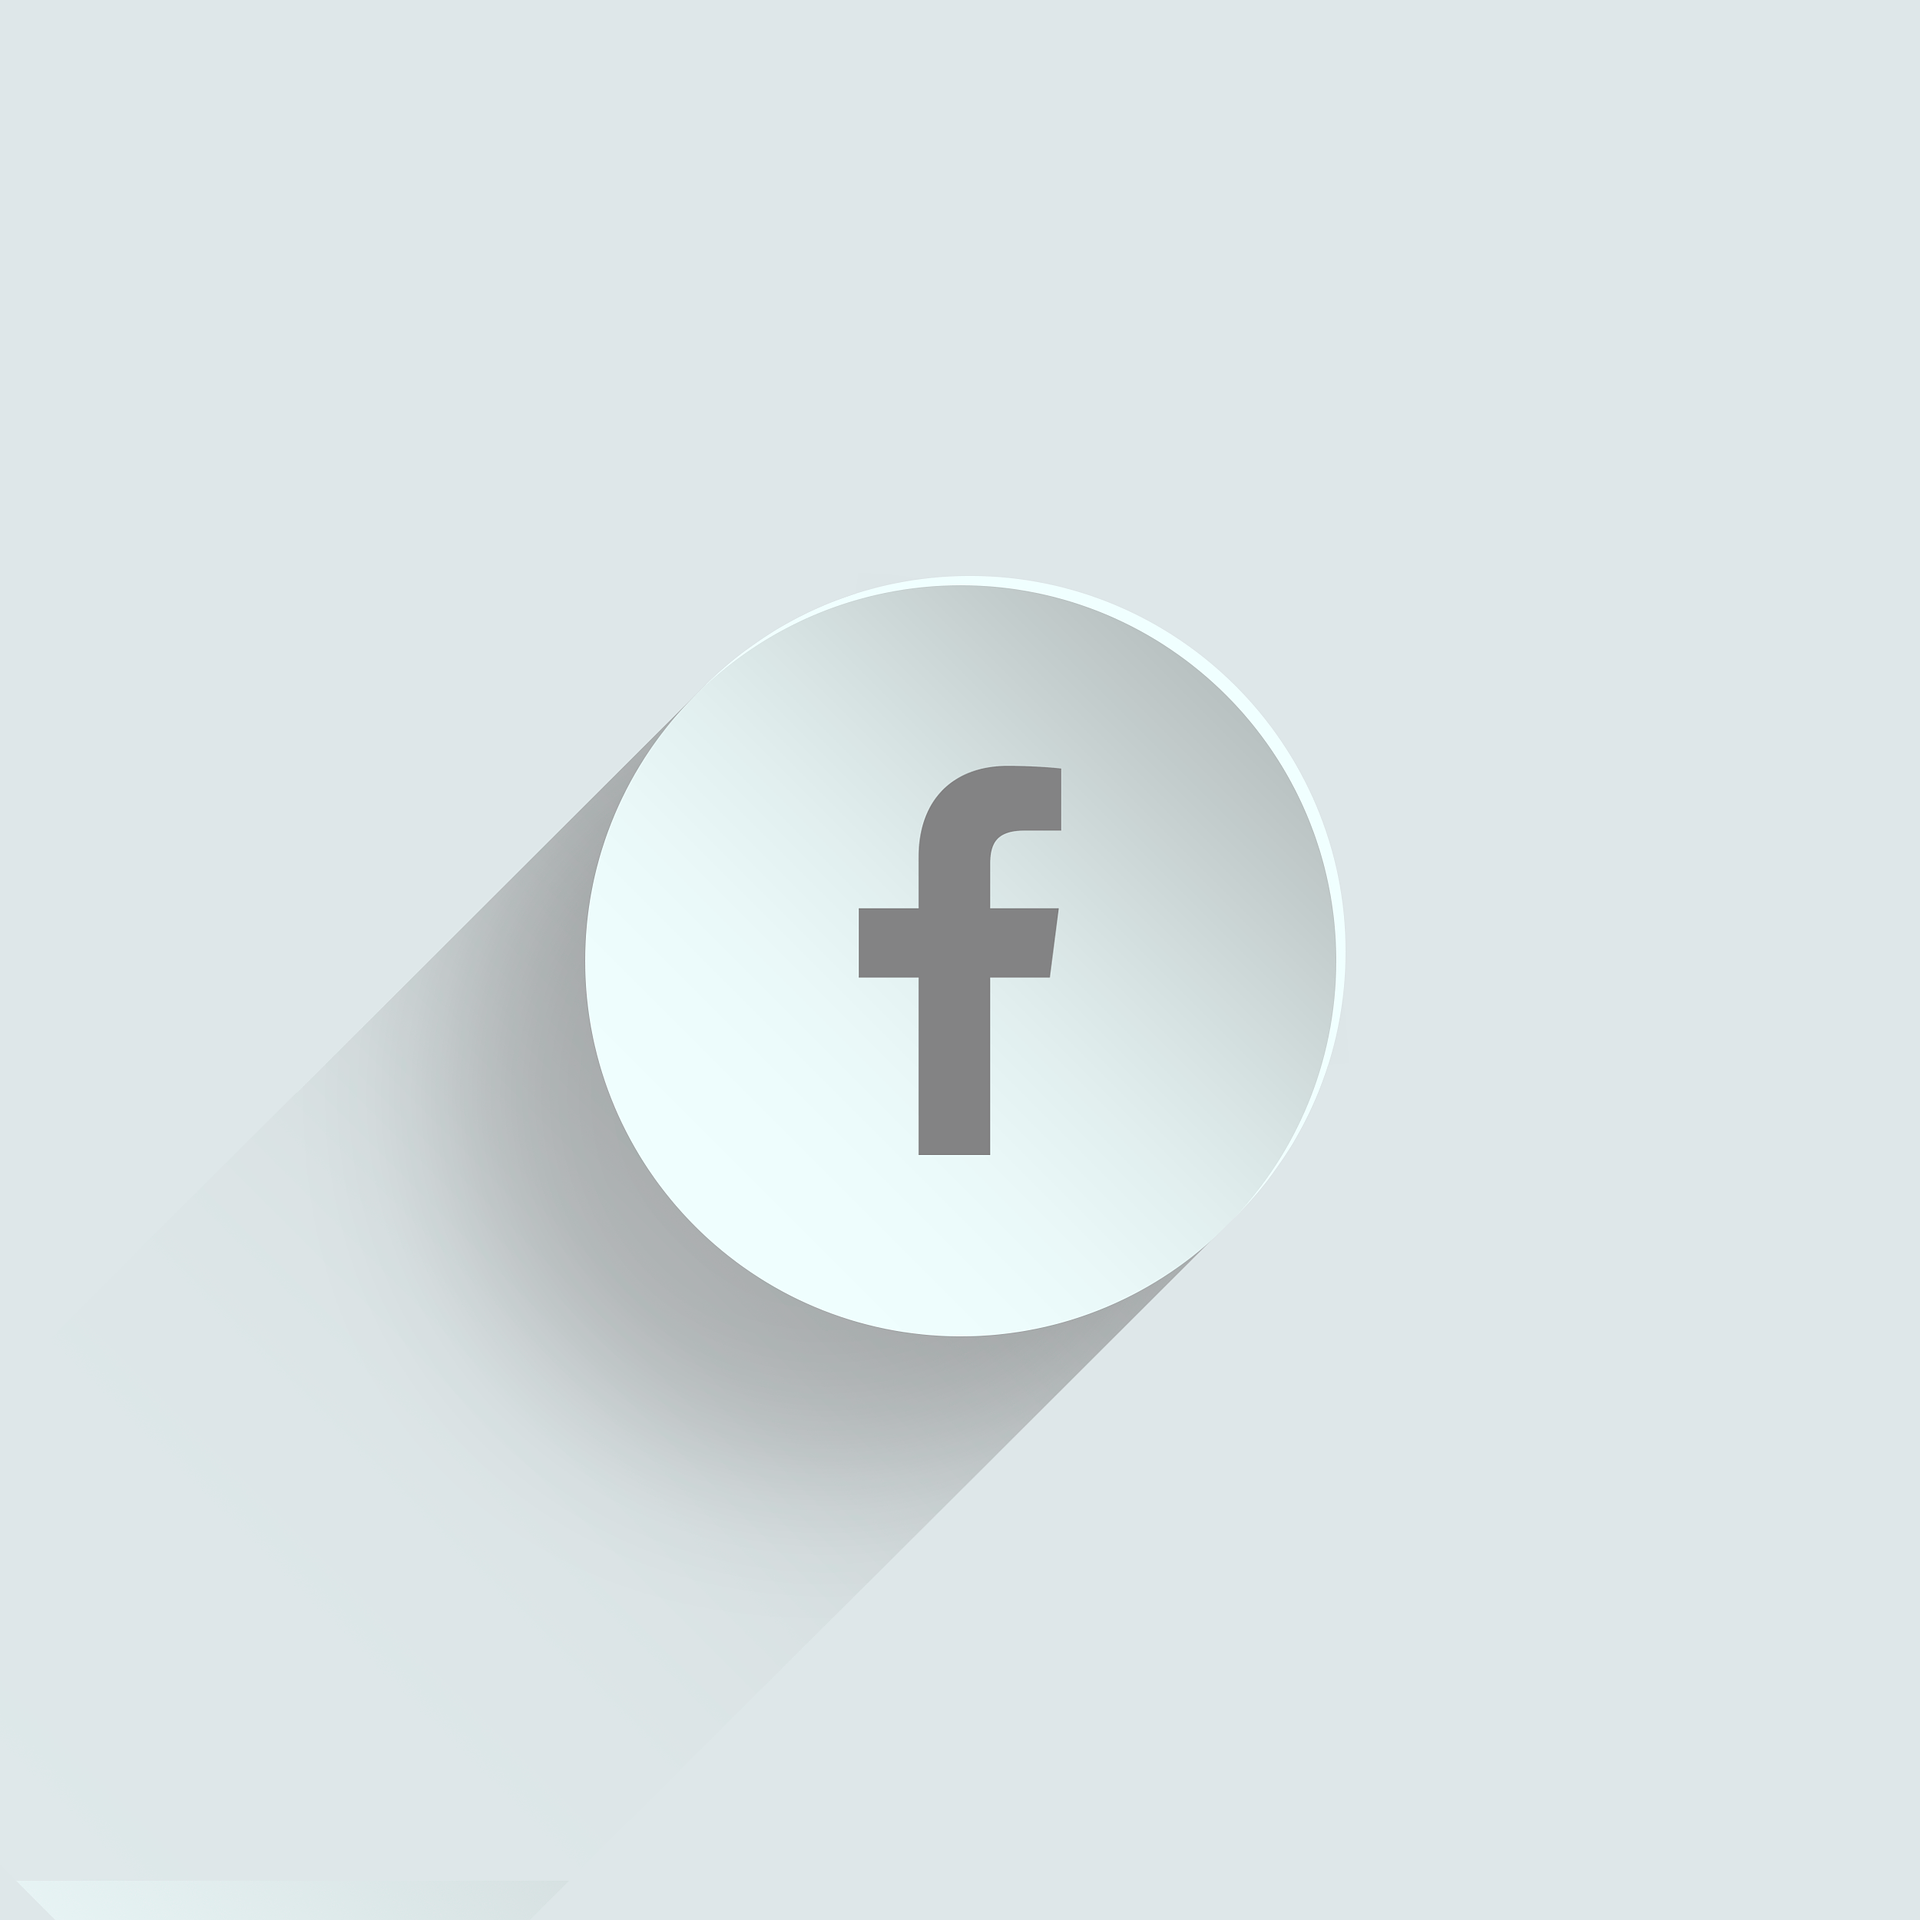 facebook ile bizi takip edin. Sizde ürünlerinizi mağazanıza eklediğinizde sosyal hesaplarınızda paylaşabilirsiniz